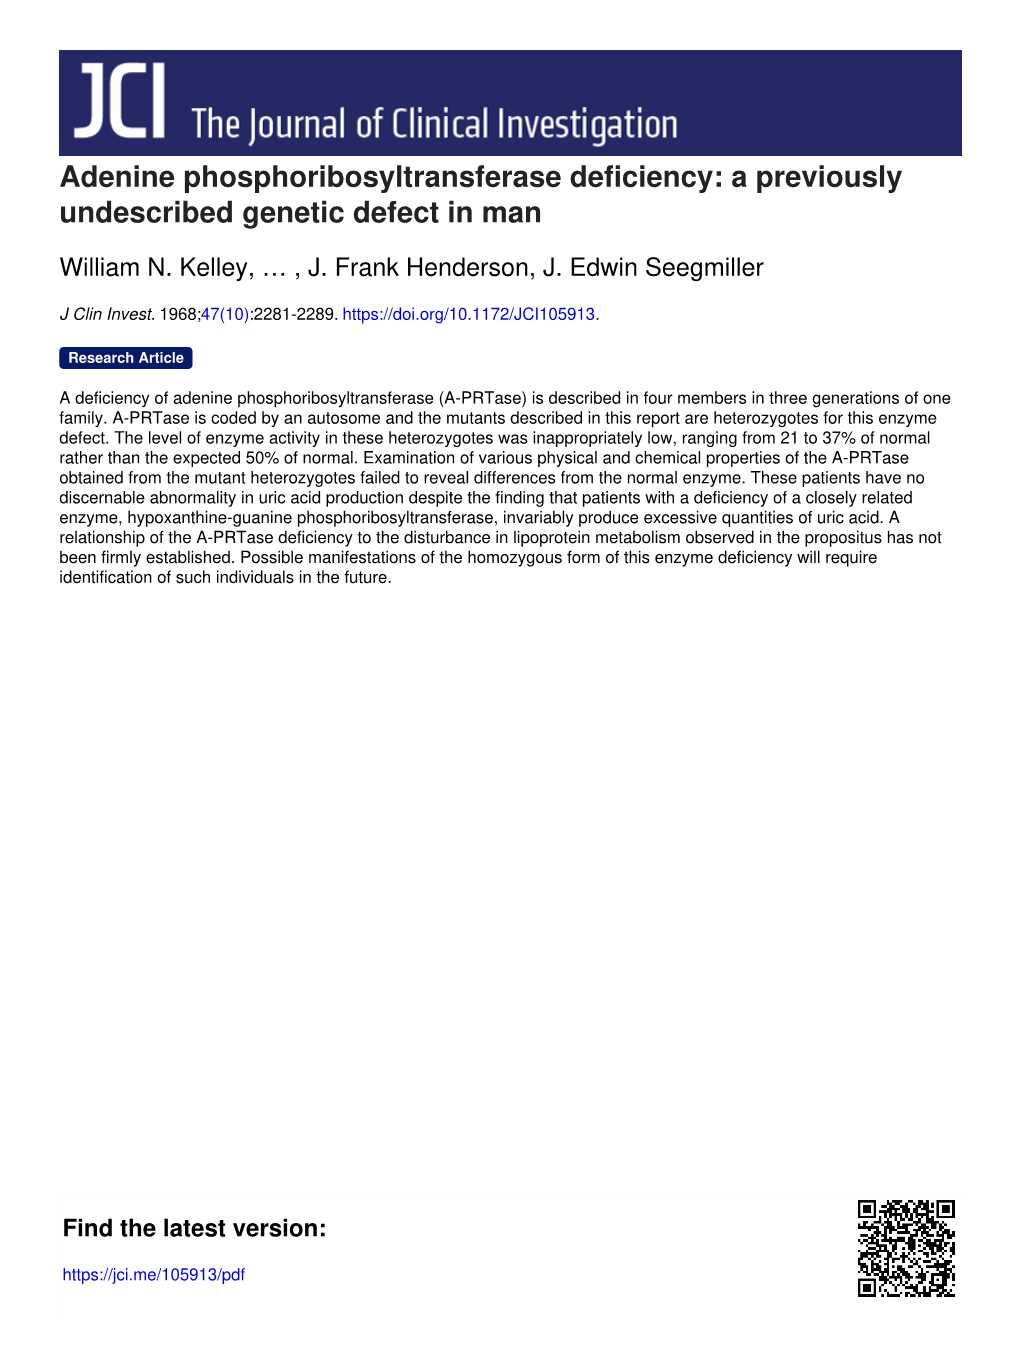 Adenine Phosphoribosyltransferase Deficiency: a Previously Undescribed Genetic Defect in Man